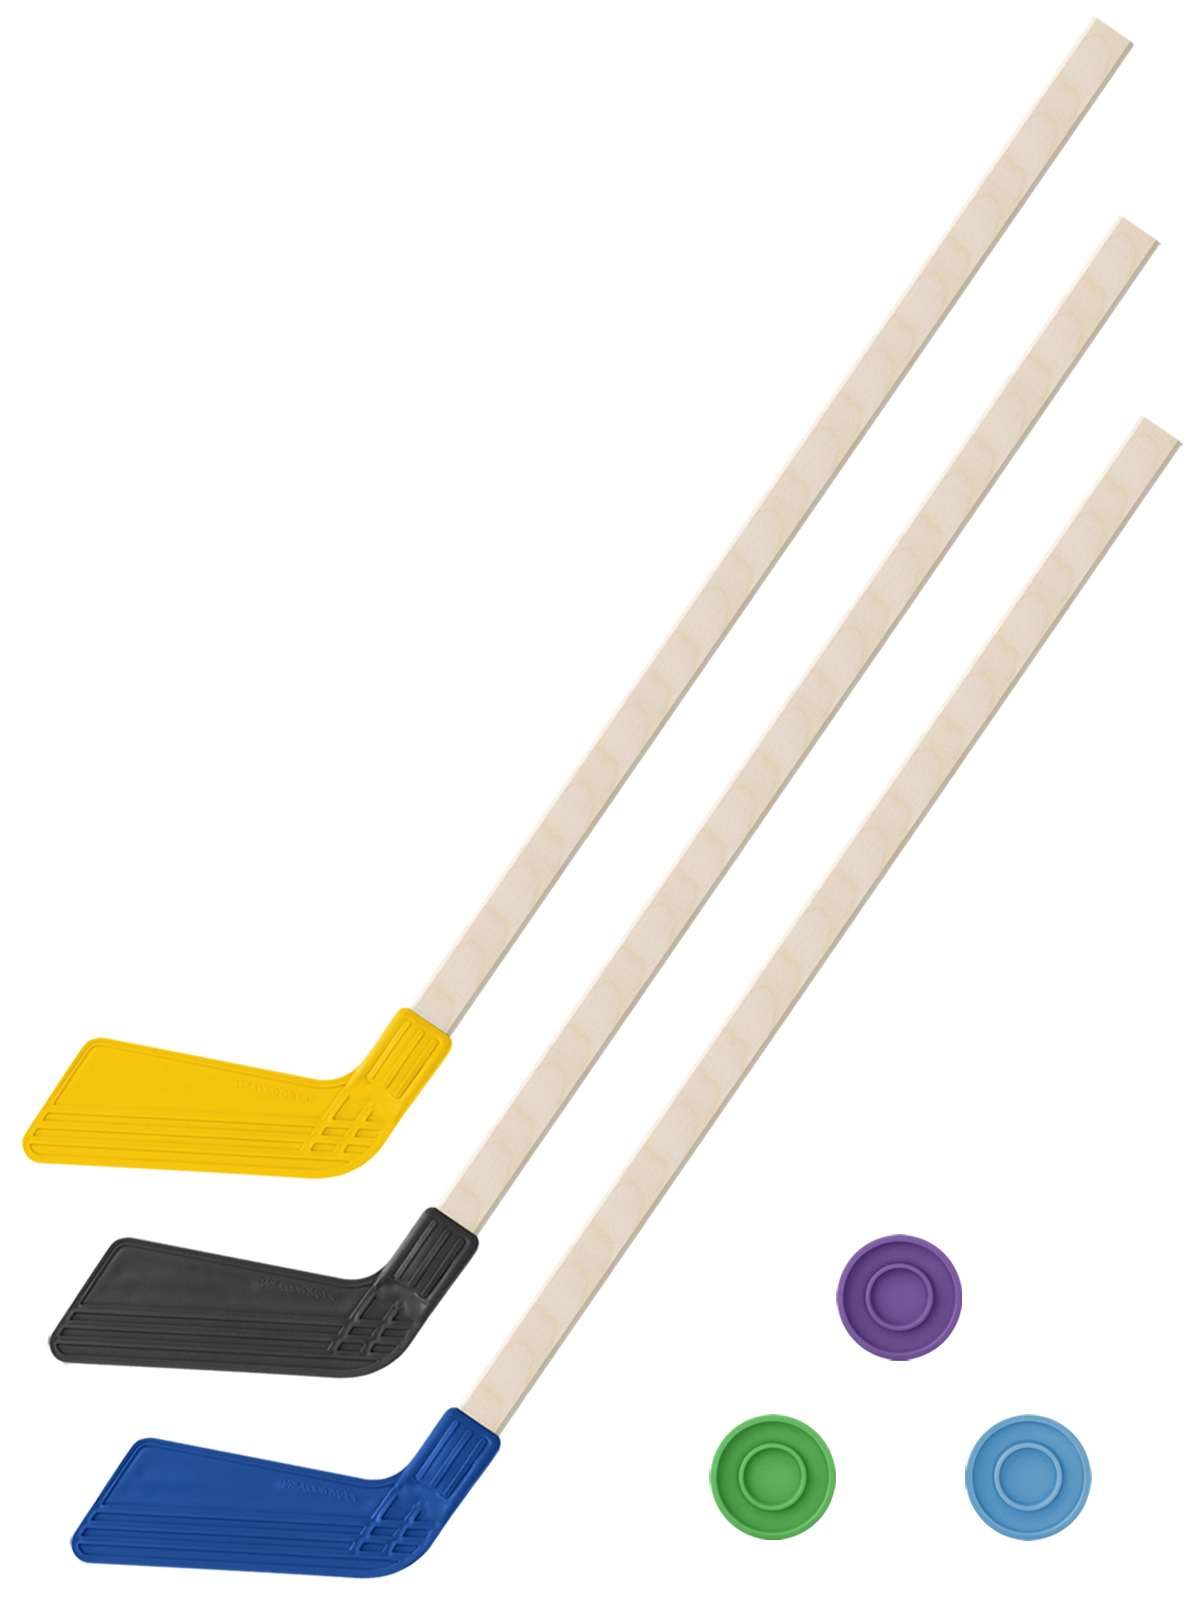 Детский хоккейный набор Задира-плюс 3 в 1 Клюшка хоккейная 80см (жёл,черн,син) + 3 шайбы клюшка флорбольная acito apache 33 yellow 95 round прямой